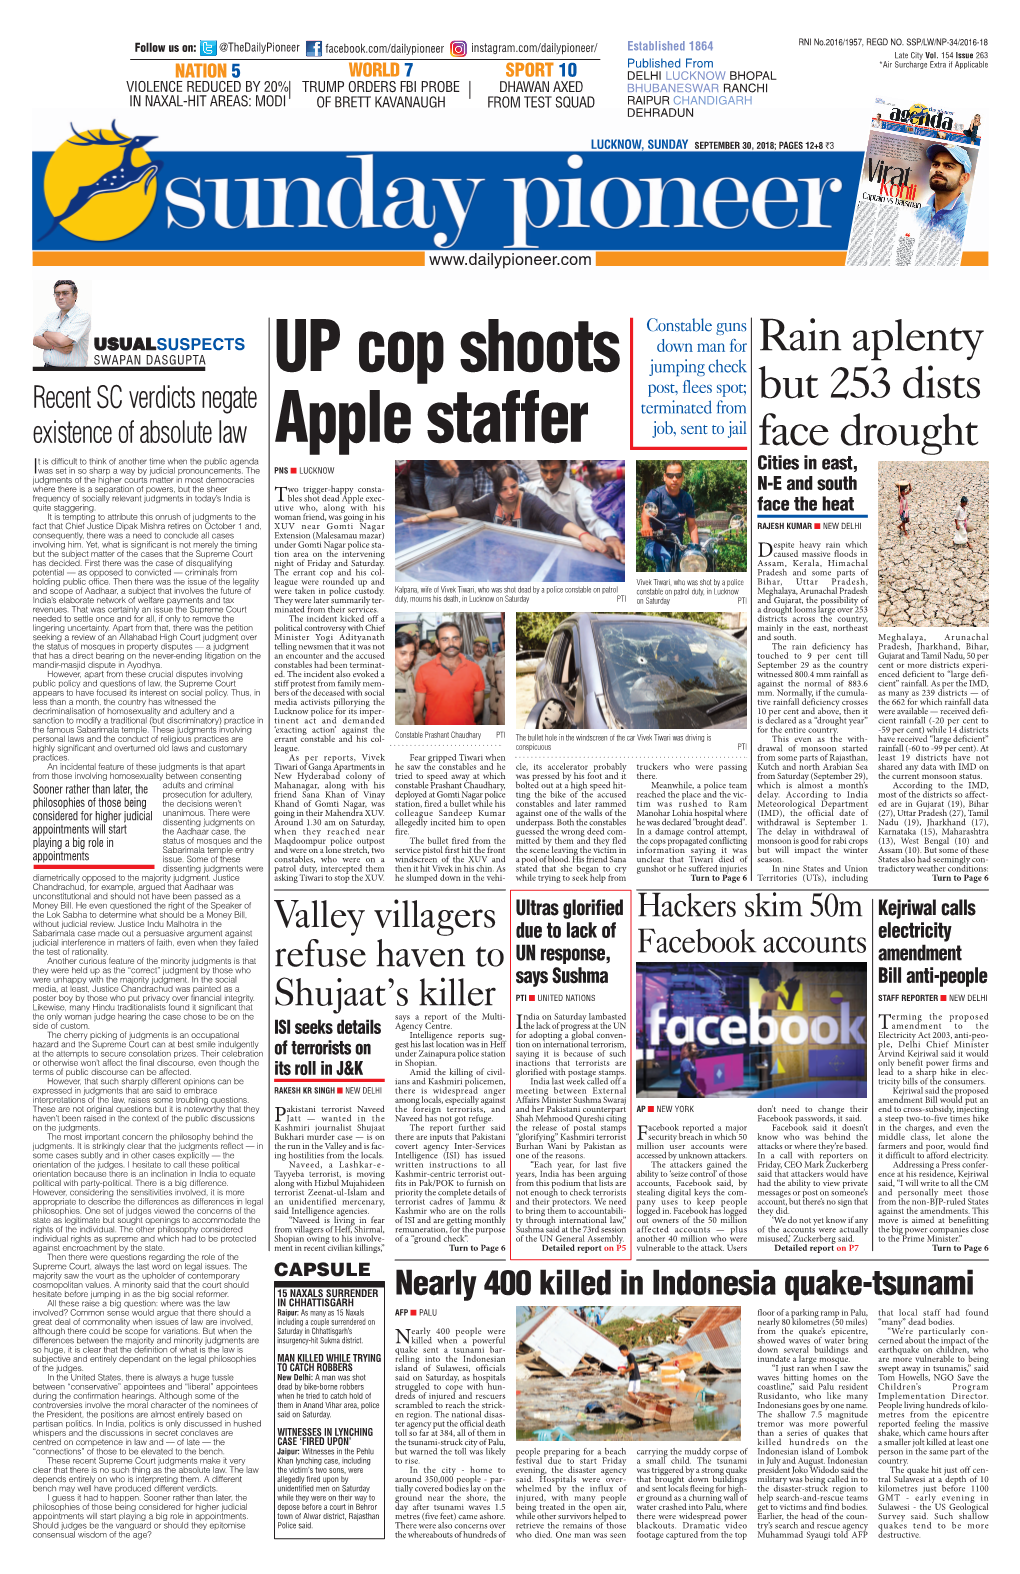 UP Cop Shoots Apple Staffer